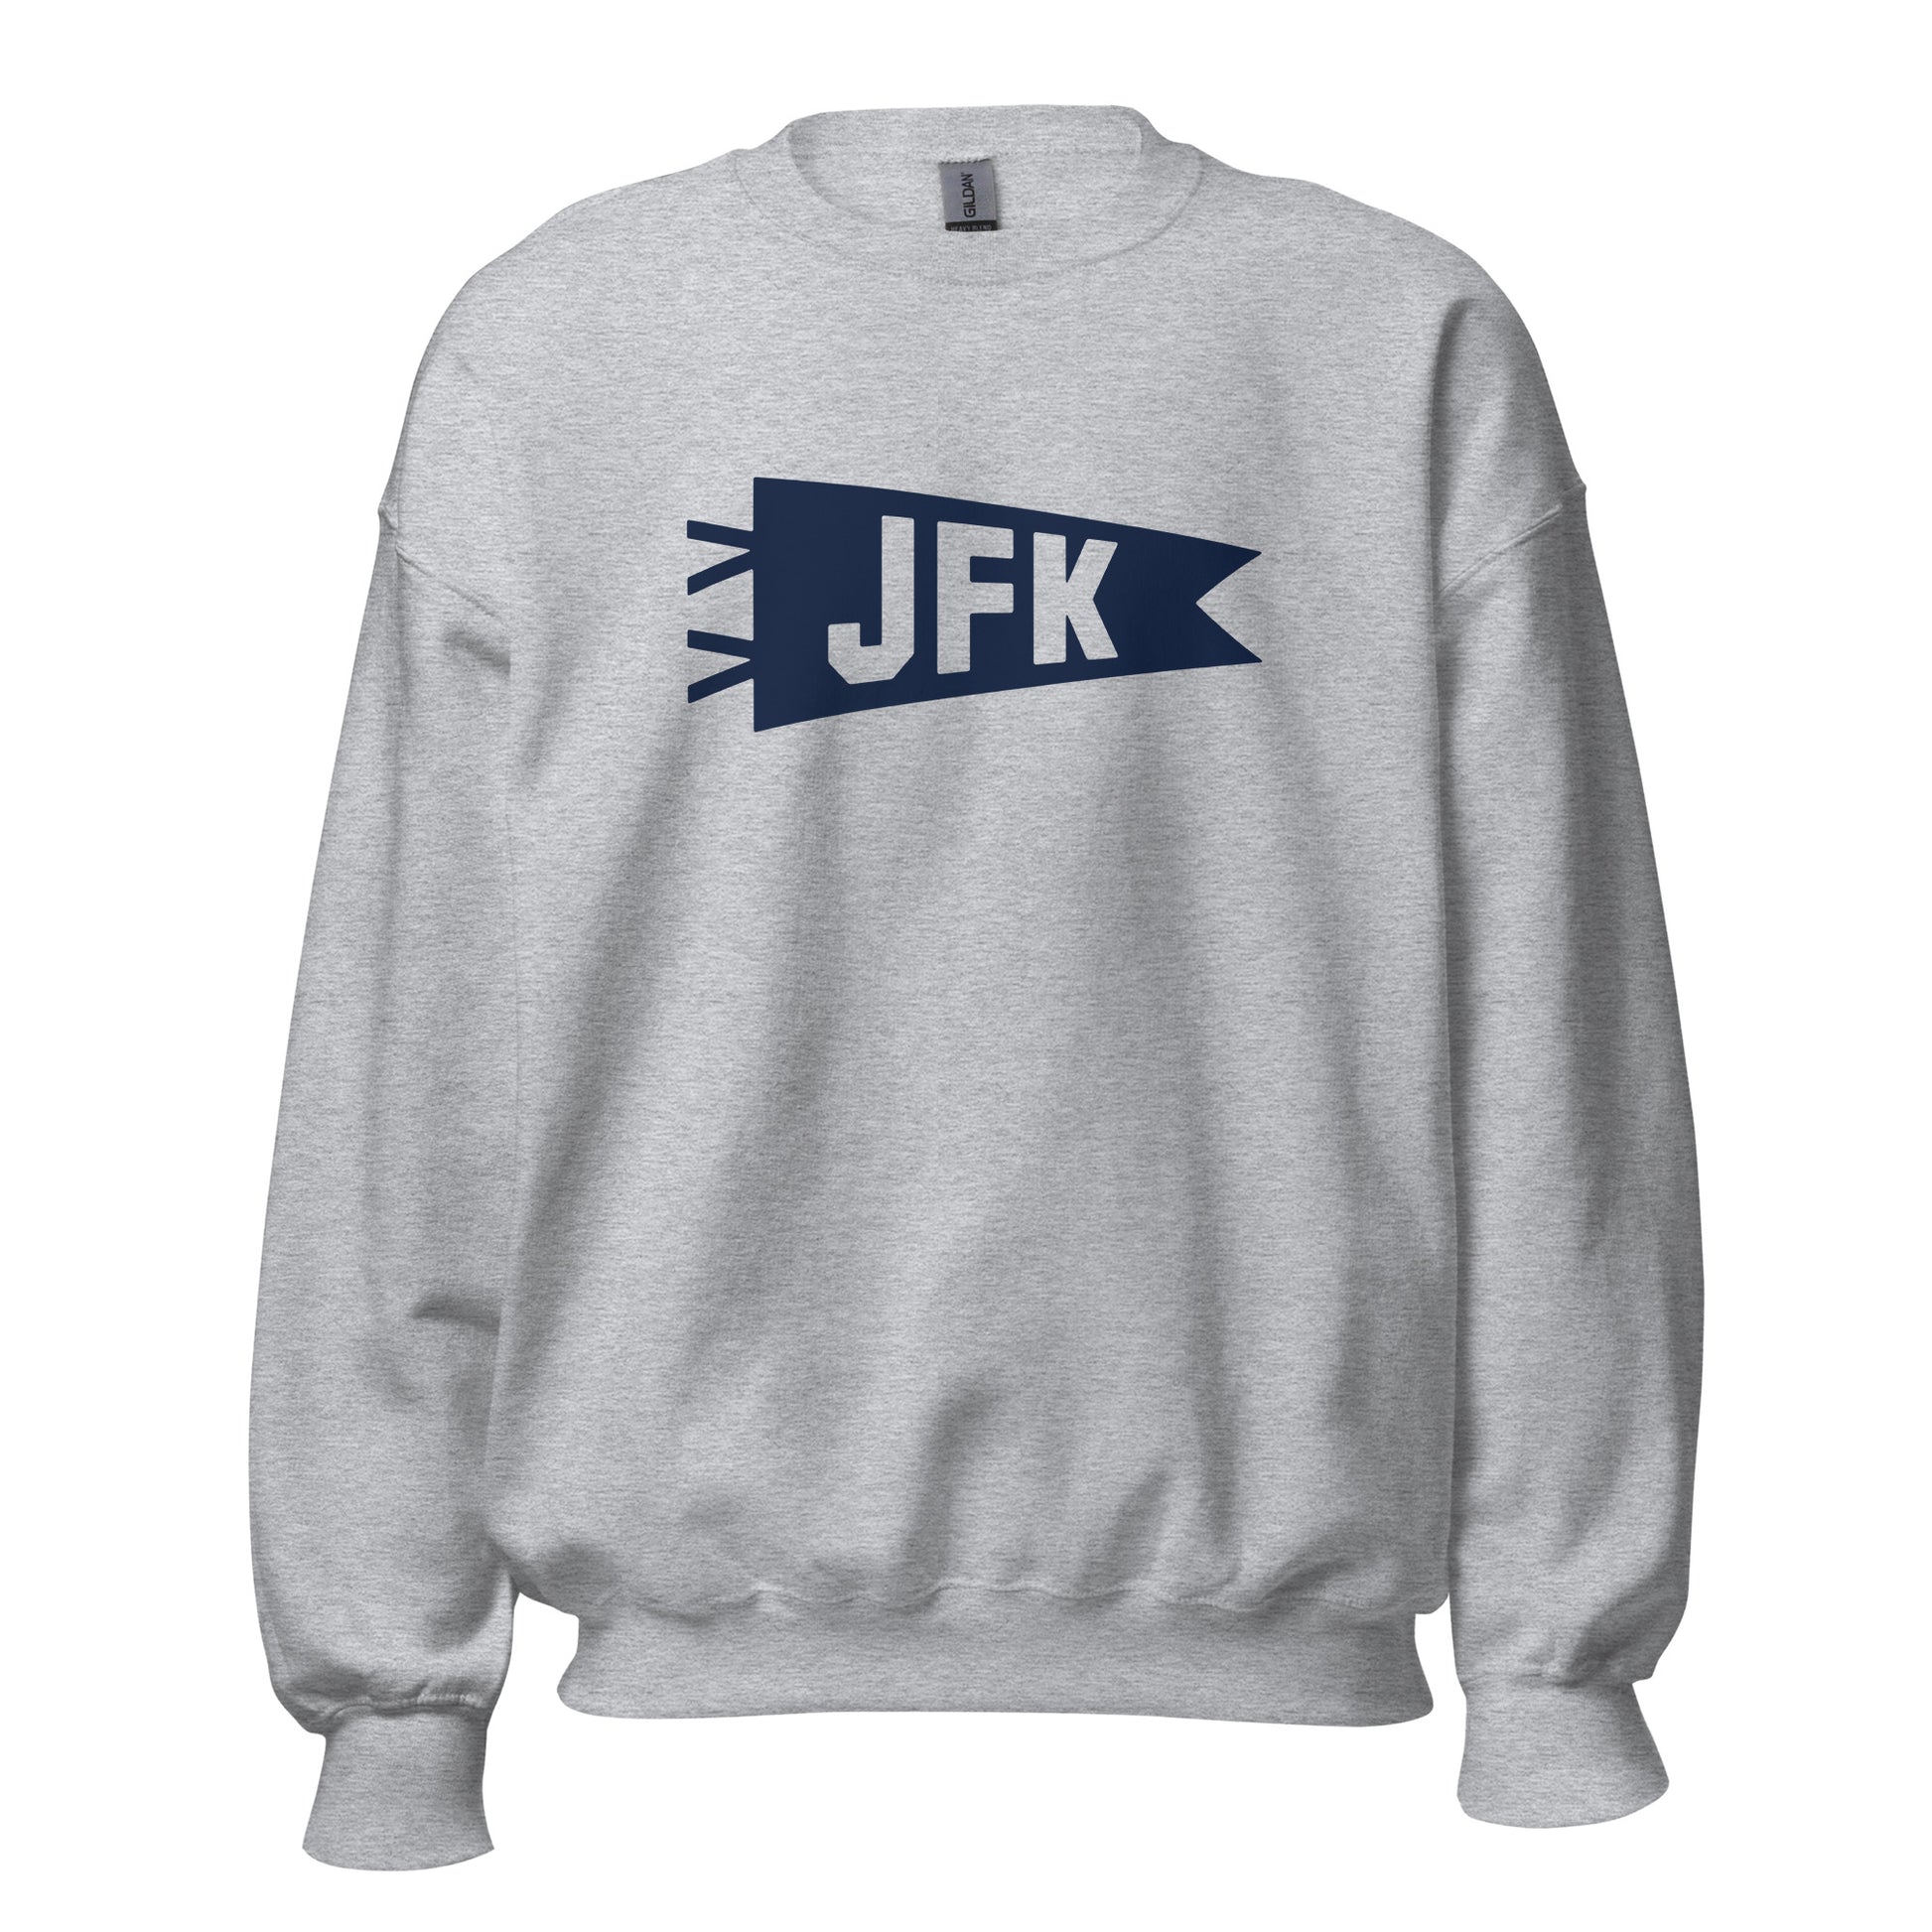 Airport Code Sweatshirt - Navy Blue Graphic • JFK New York City • YHM Designs - Image 08